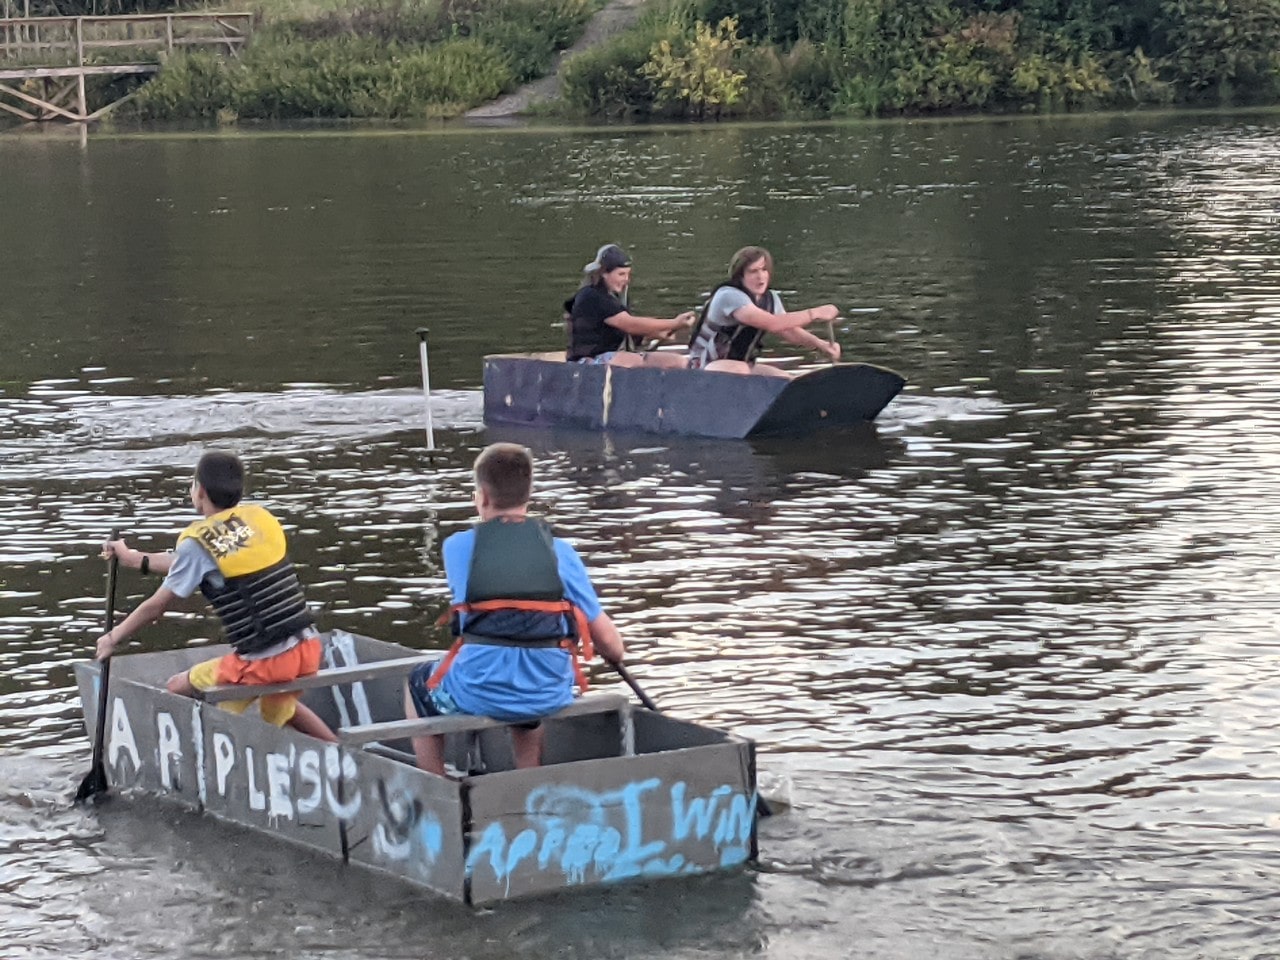 Boy-Built Boat Race 2022